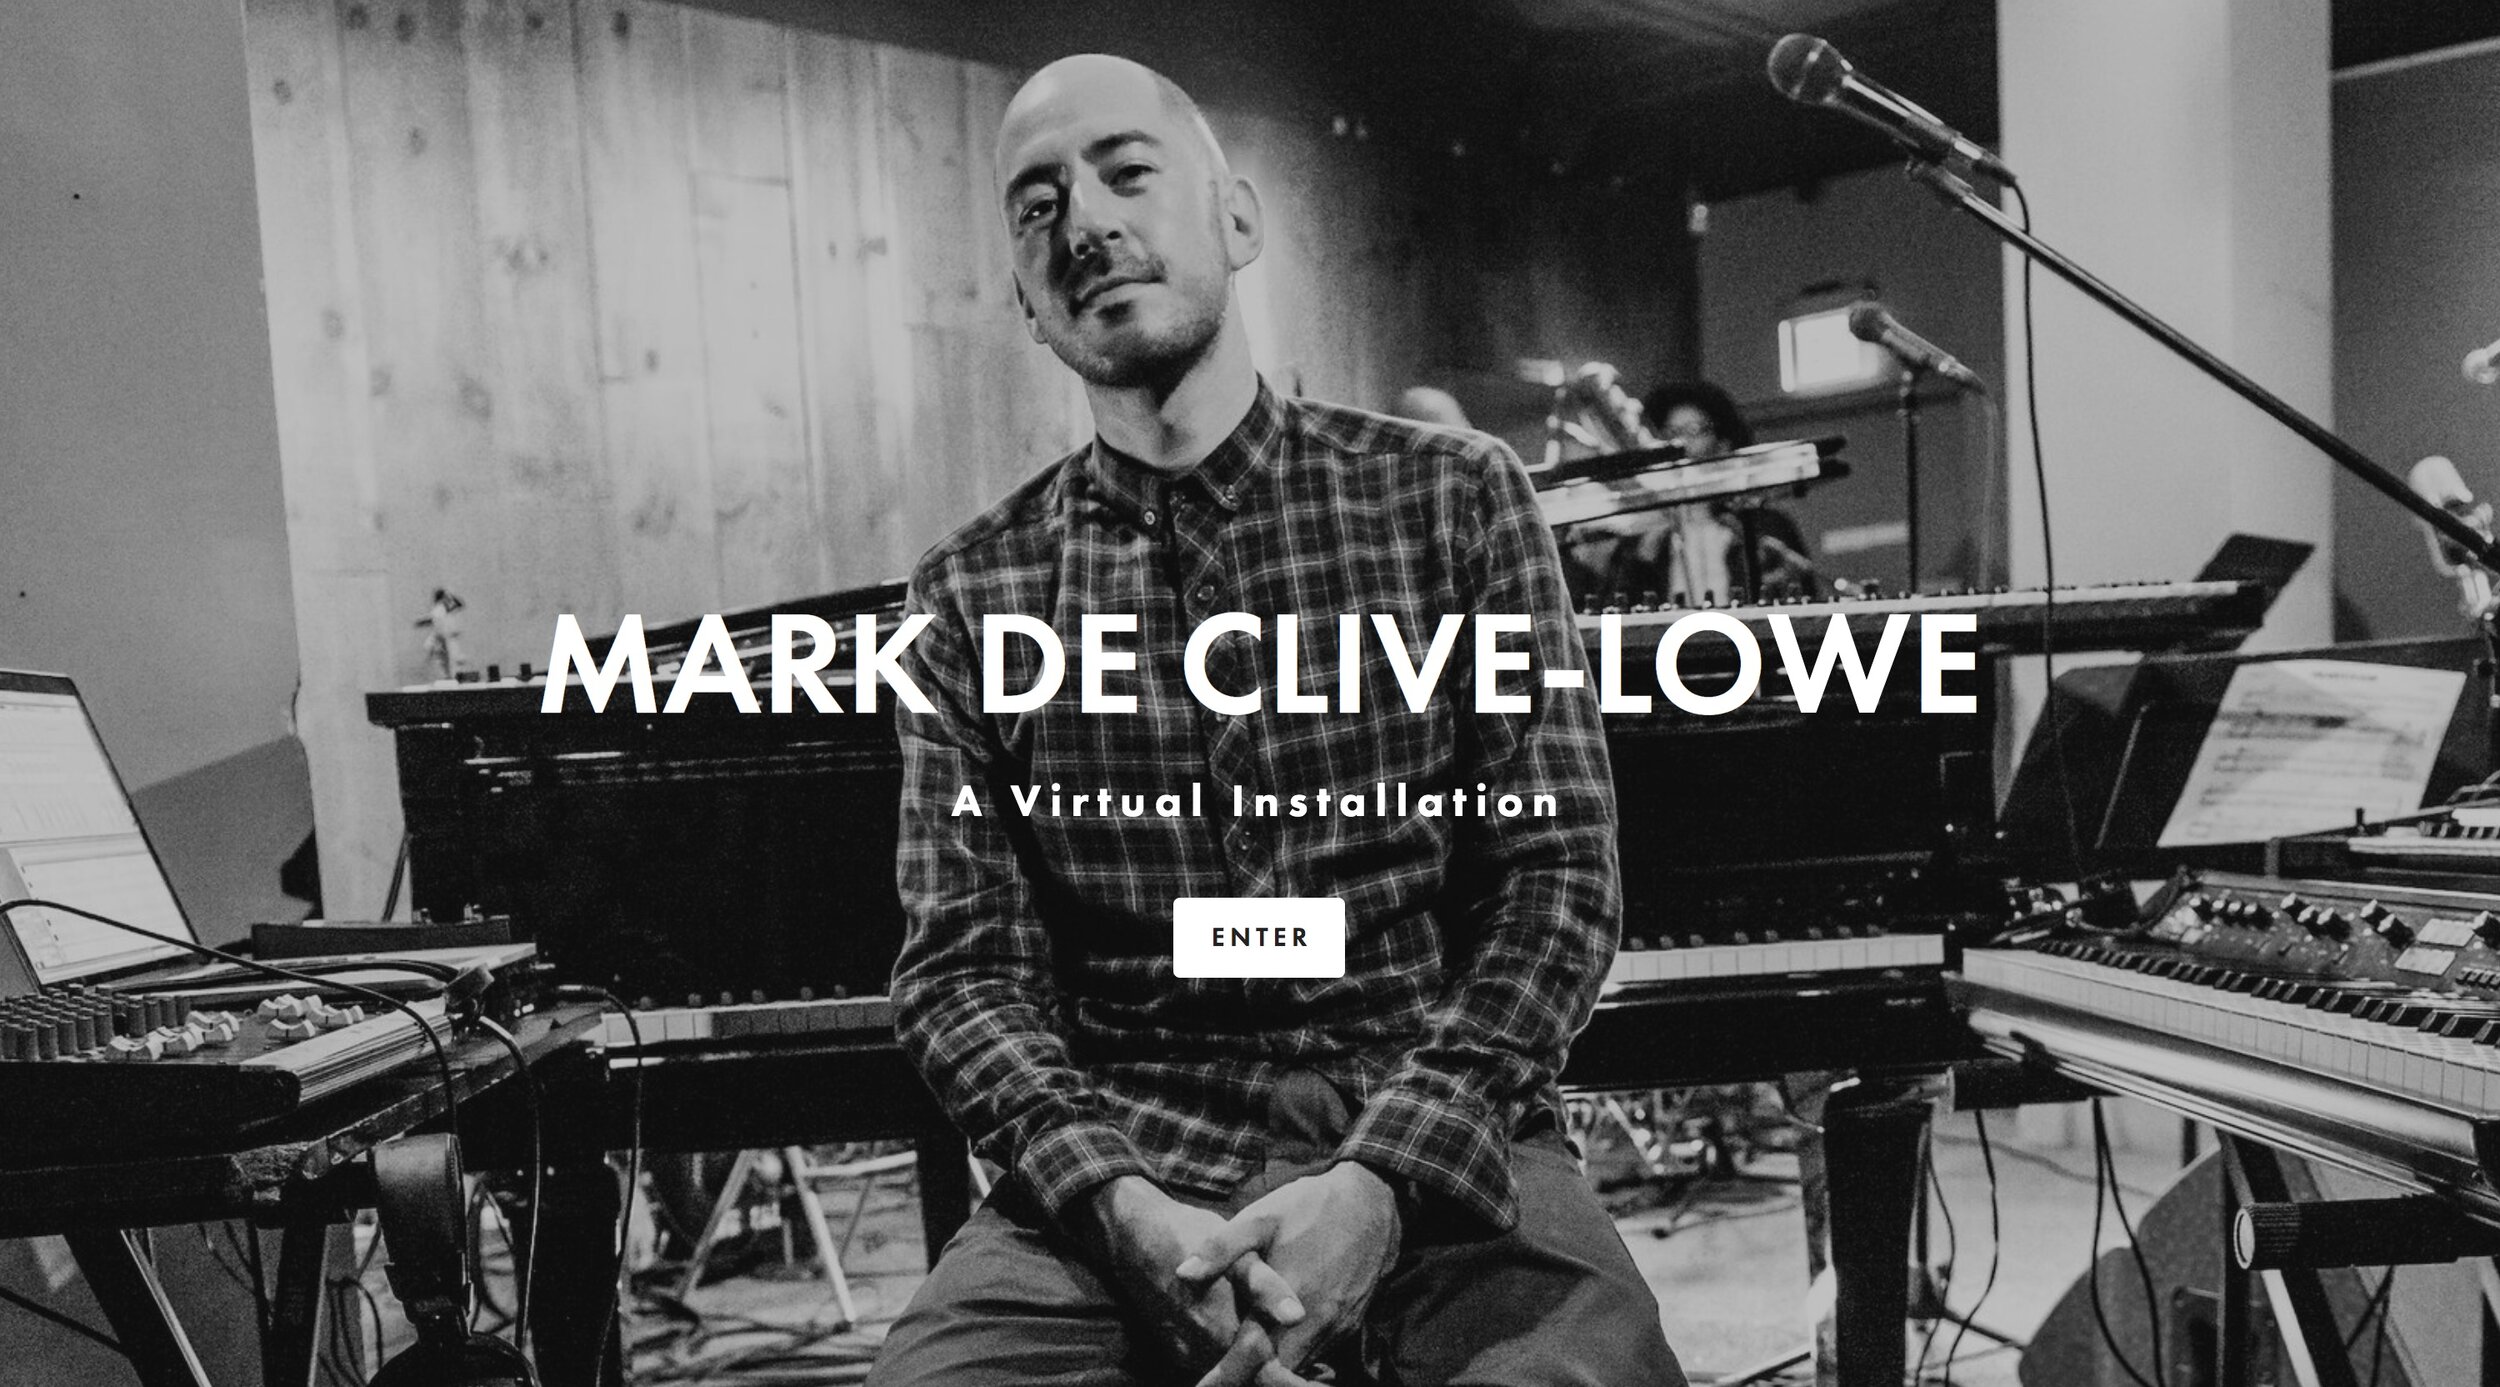 About — Mark de Clive-Lowe